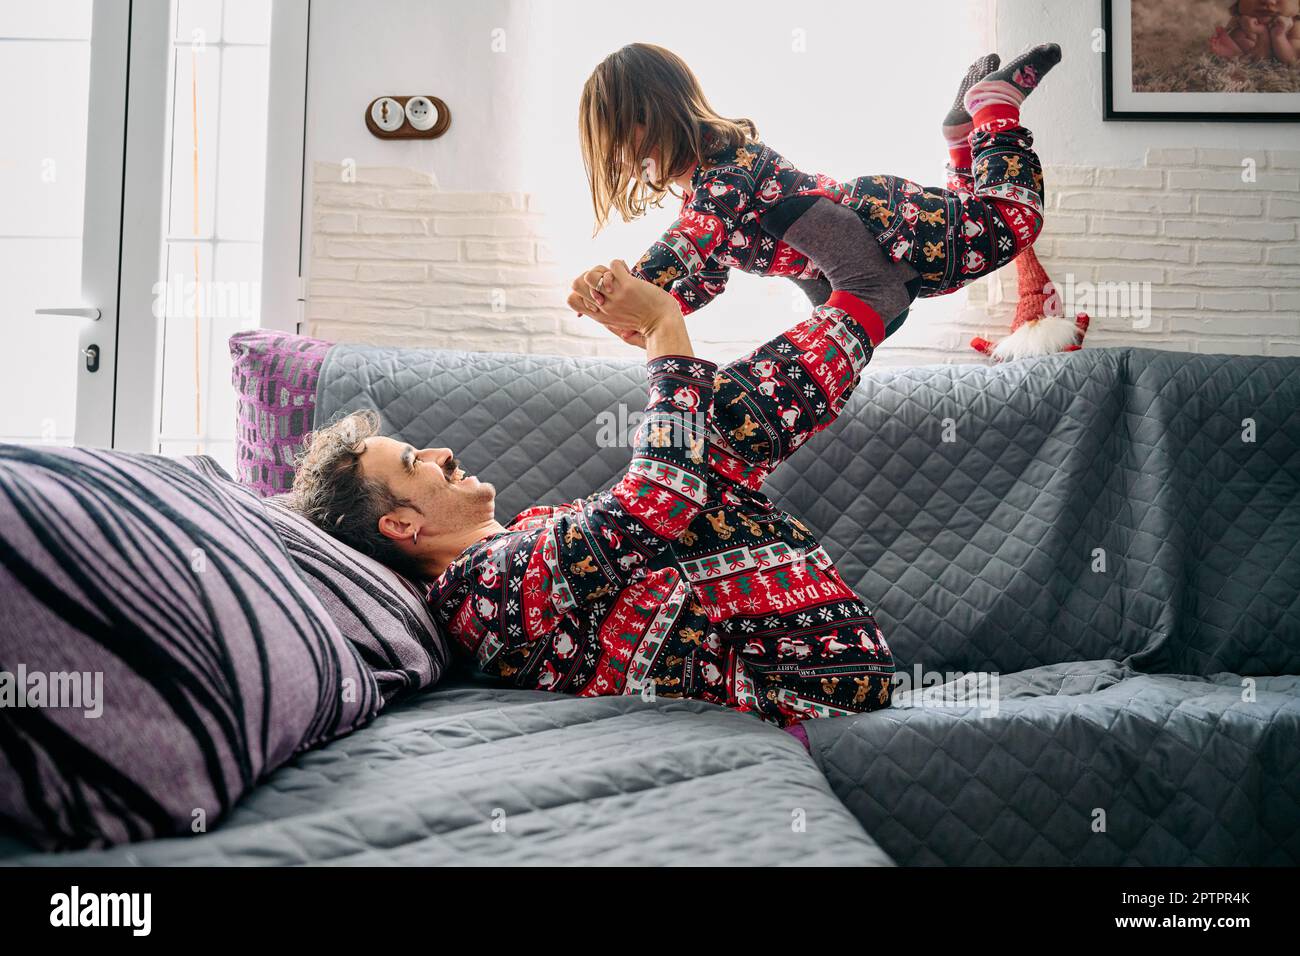 Dieses Bild zeigt einen Vater und eine Tochter im passenden Pyjama, wobei der Vater die Tochter zu Hause mit den Beinen auf dem Sofa hebt. Die Szene Stockfoto